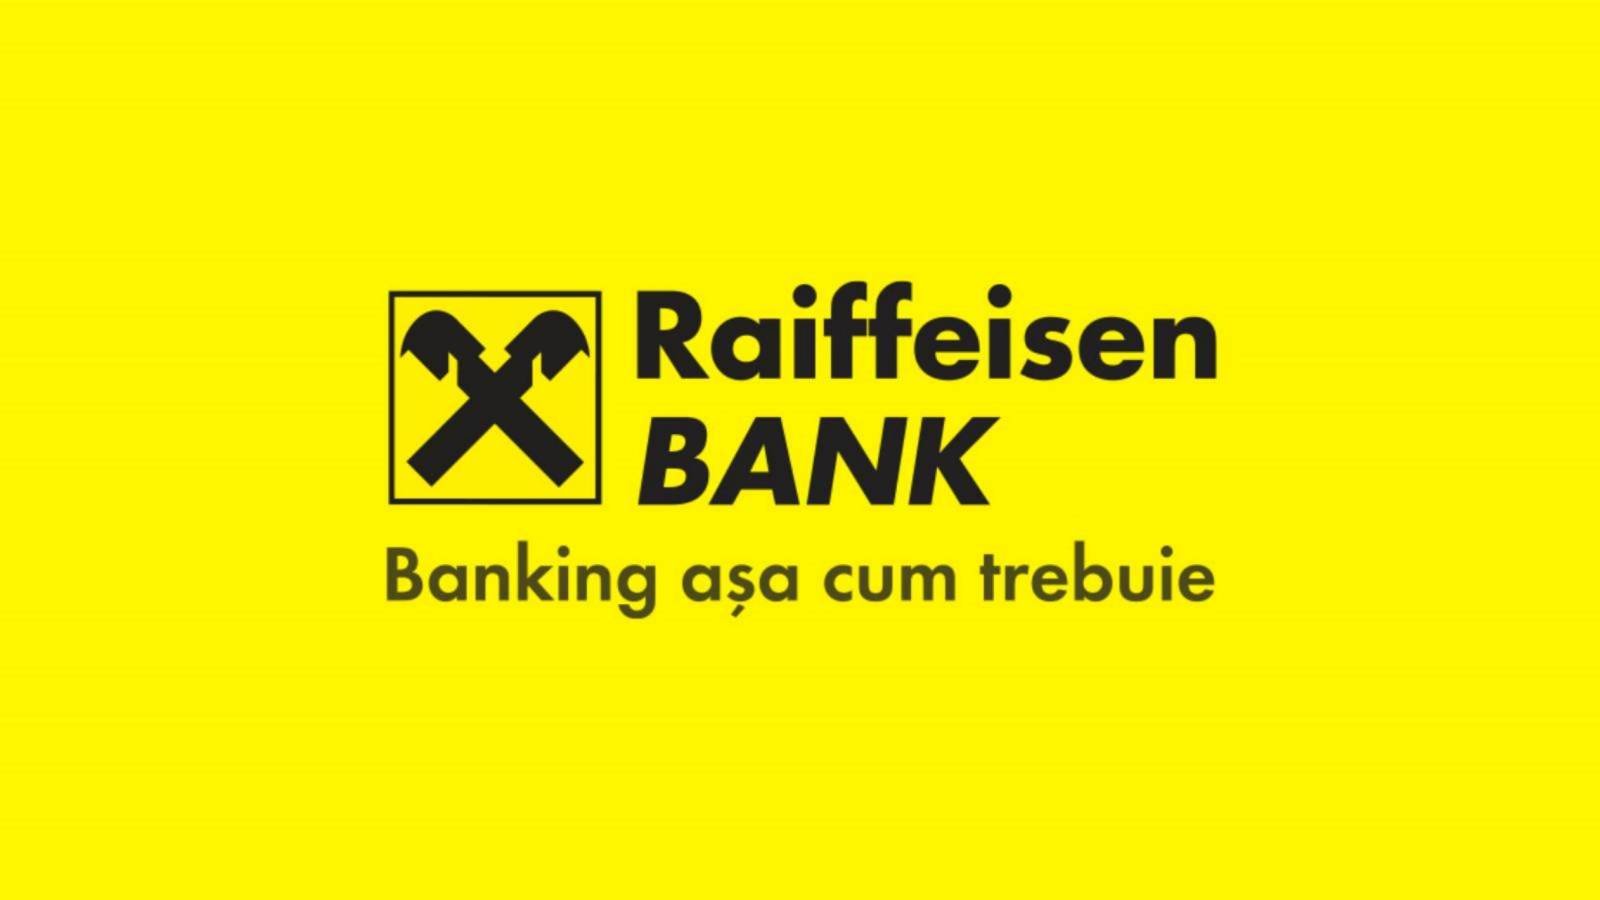 Banque Raiffeisen Google